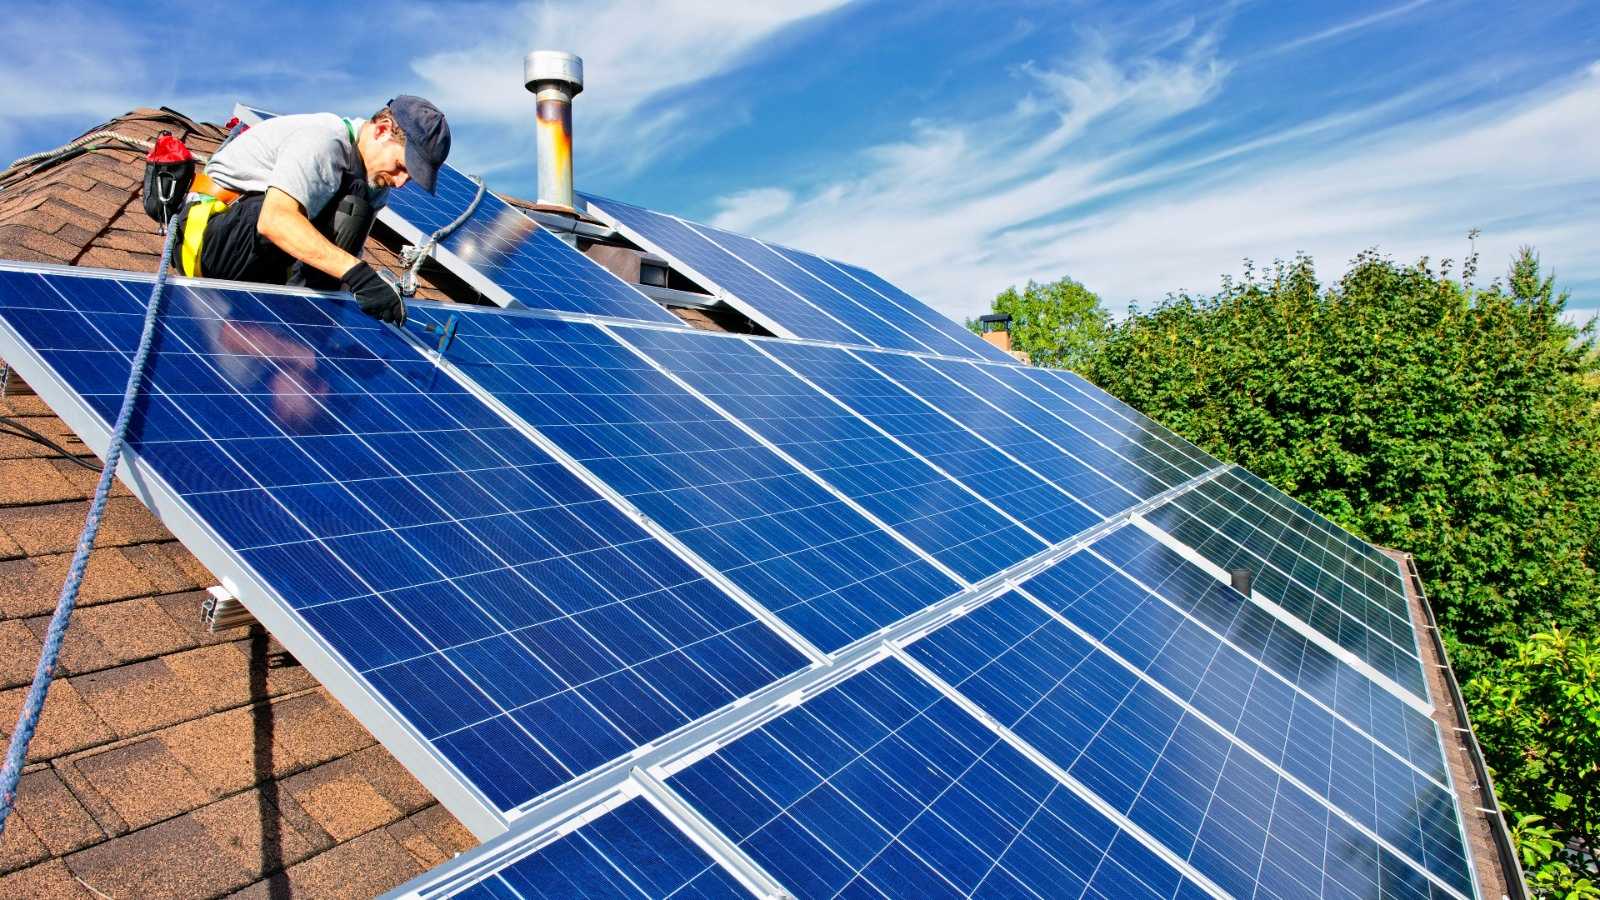 Especialistas en la Instalación de Placas Solares en su vivienda o local. Precios económicos y servicios de calidad en tiempo récord. ¡Llámanos!